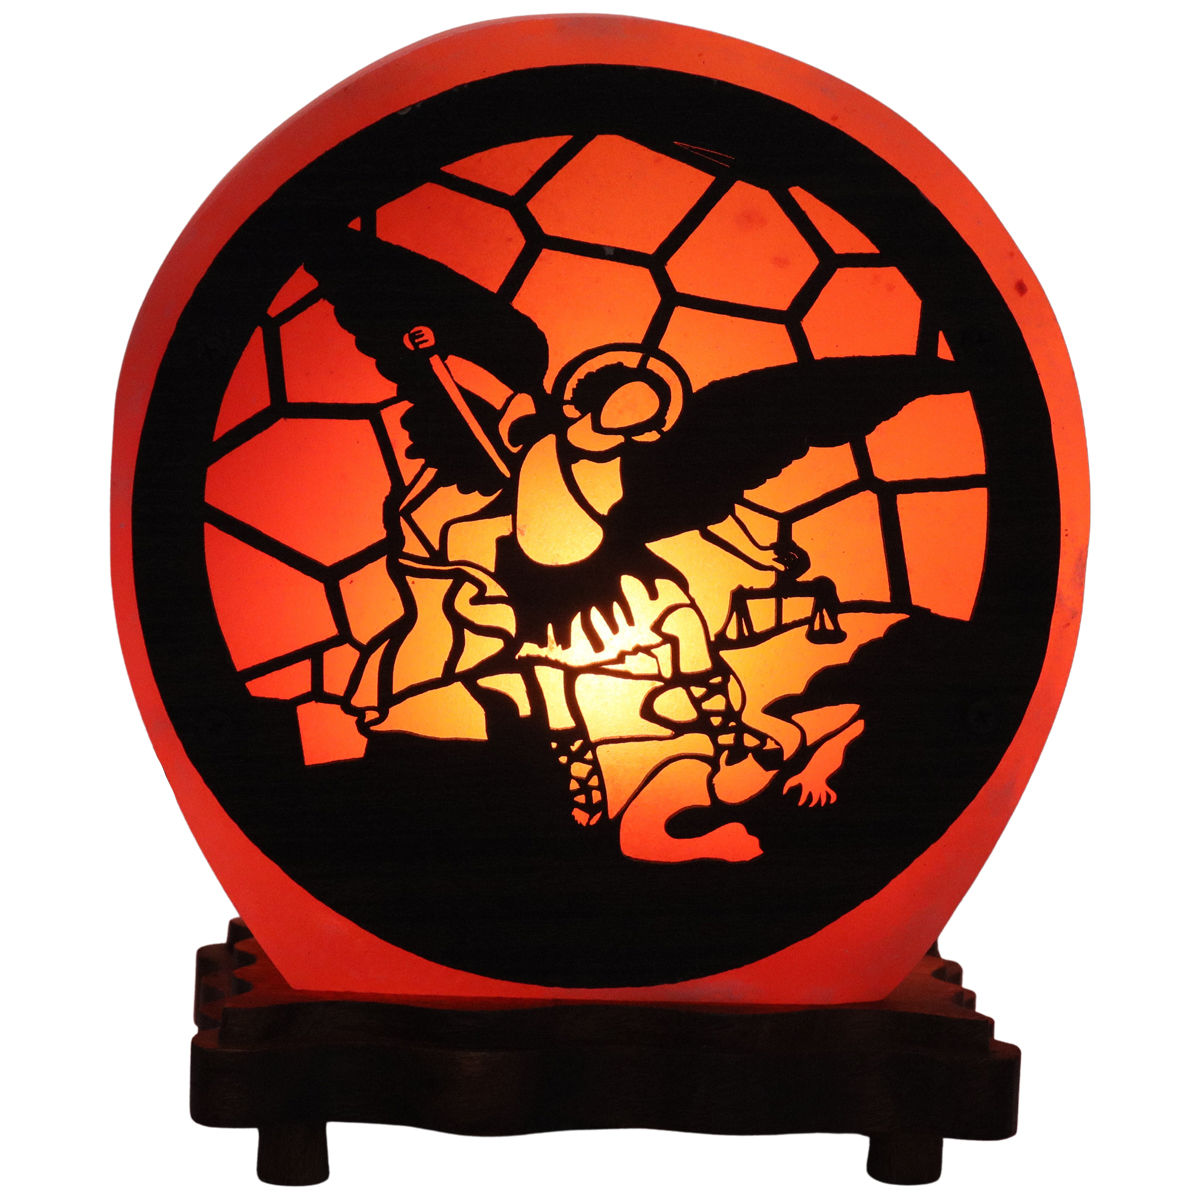 Lampe de sel de l´Himalaya forme ronde Ø 15 cm épaisseur 6,5 cm, décor 3D, livrée en boite individuelle avec cordon et ampoule. Plusieurs saints